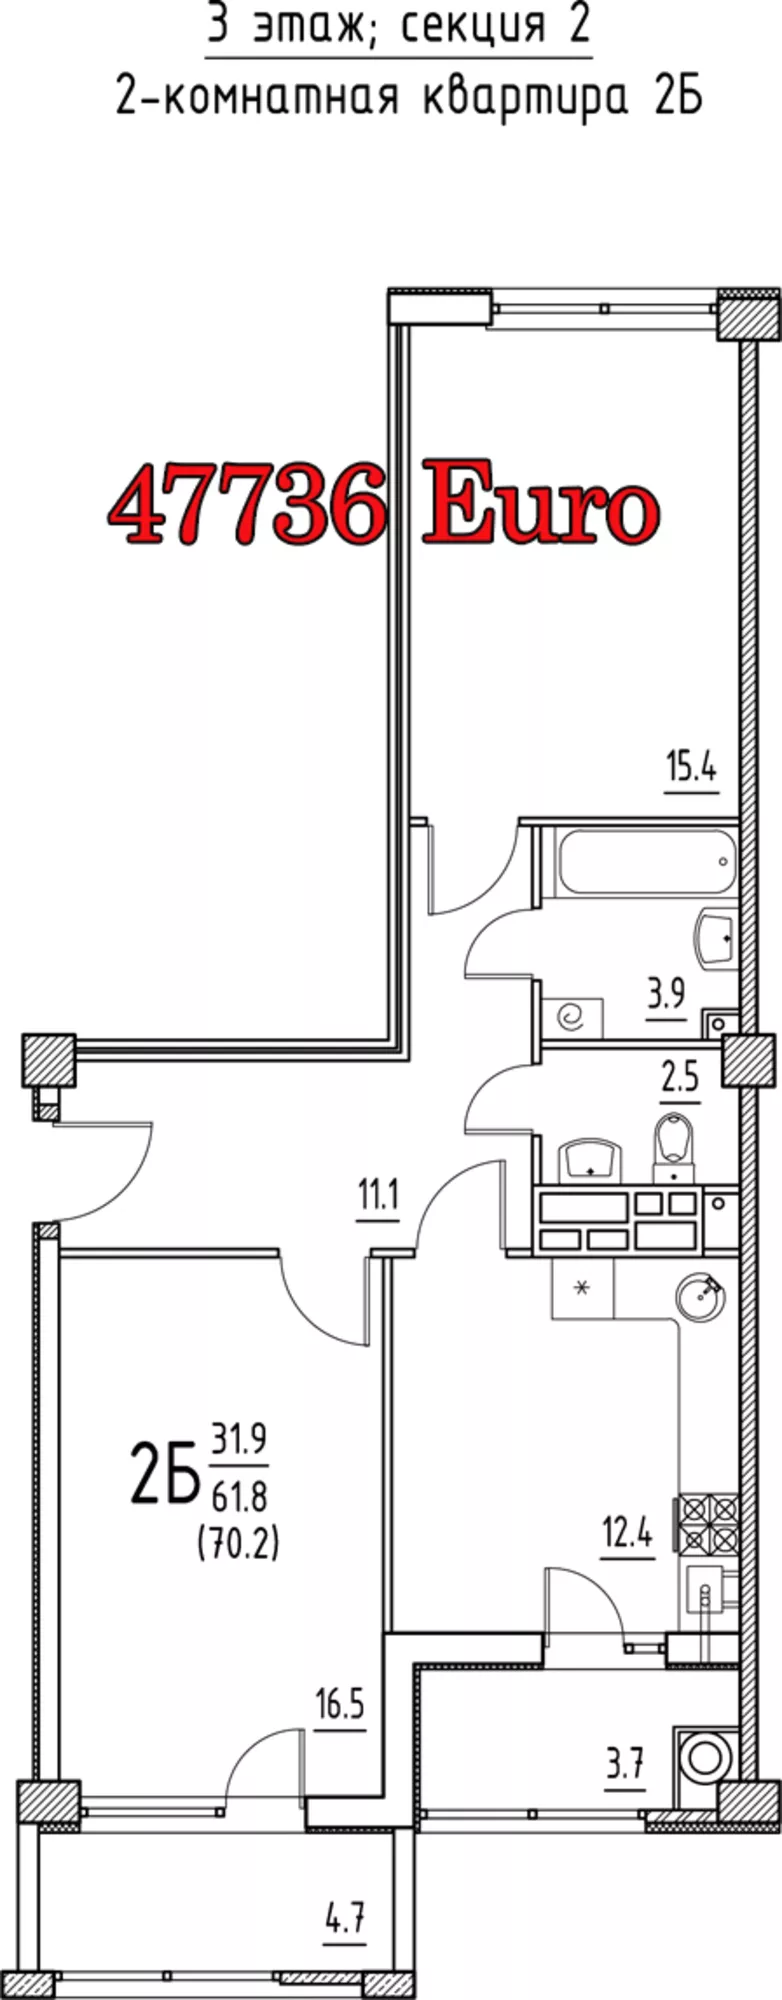 Apartament direct de la constructor,  de mijloc,  varianta alba 3